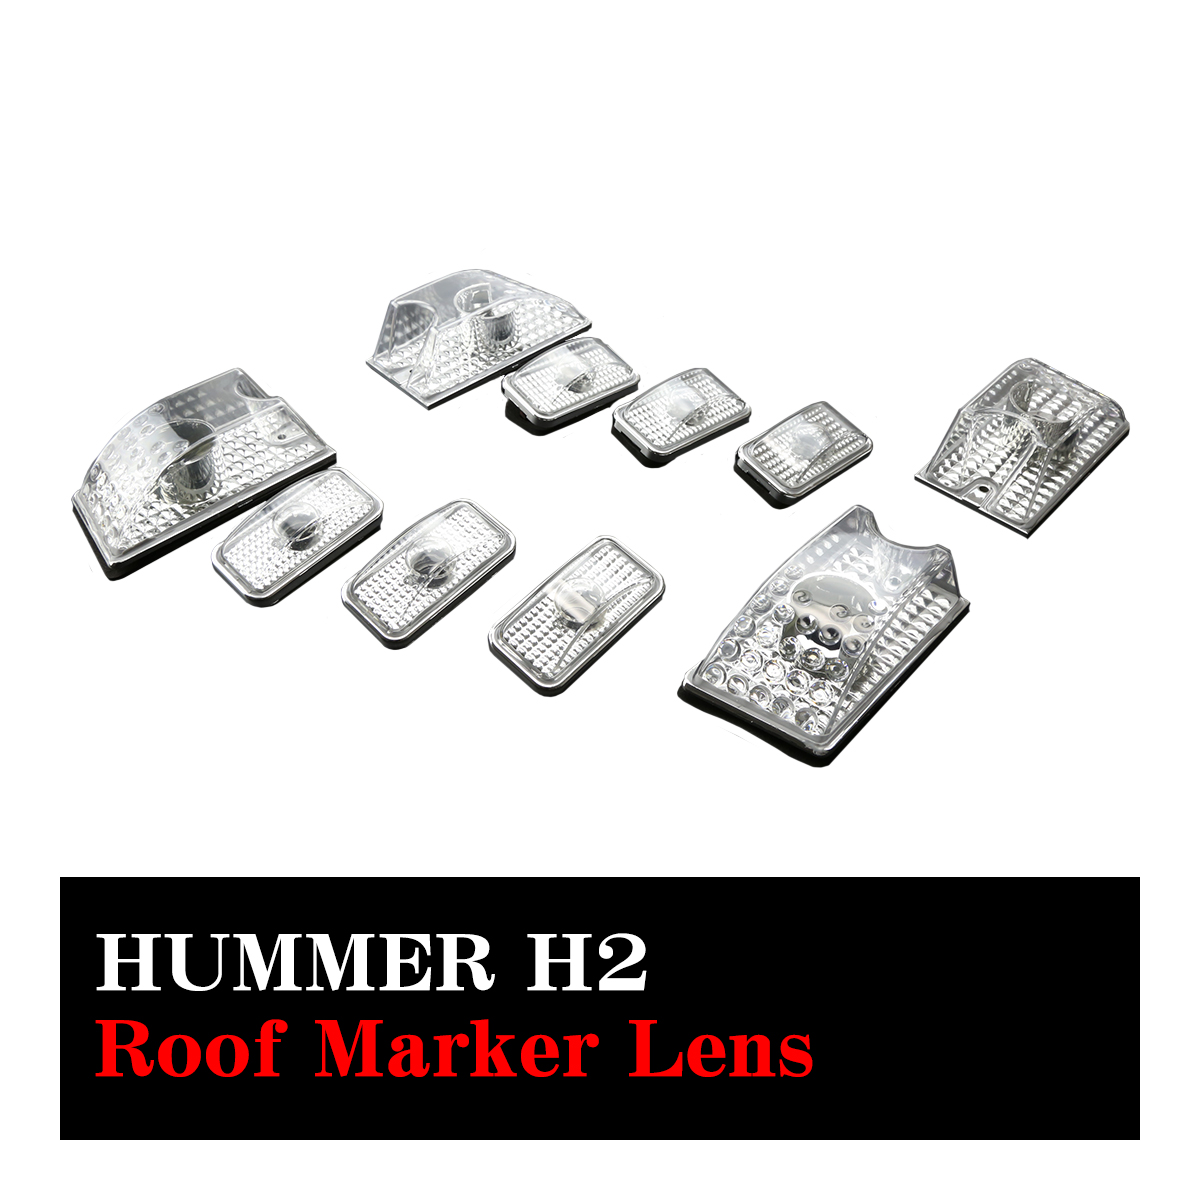 HUMMER H2用 ルーフ マーカーランプ レンズ 10点セット クリアーレンズ 